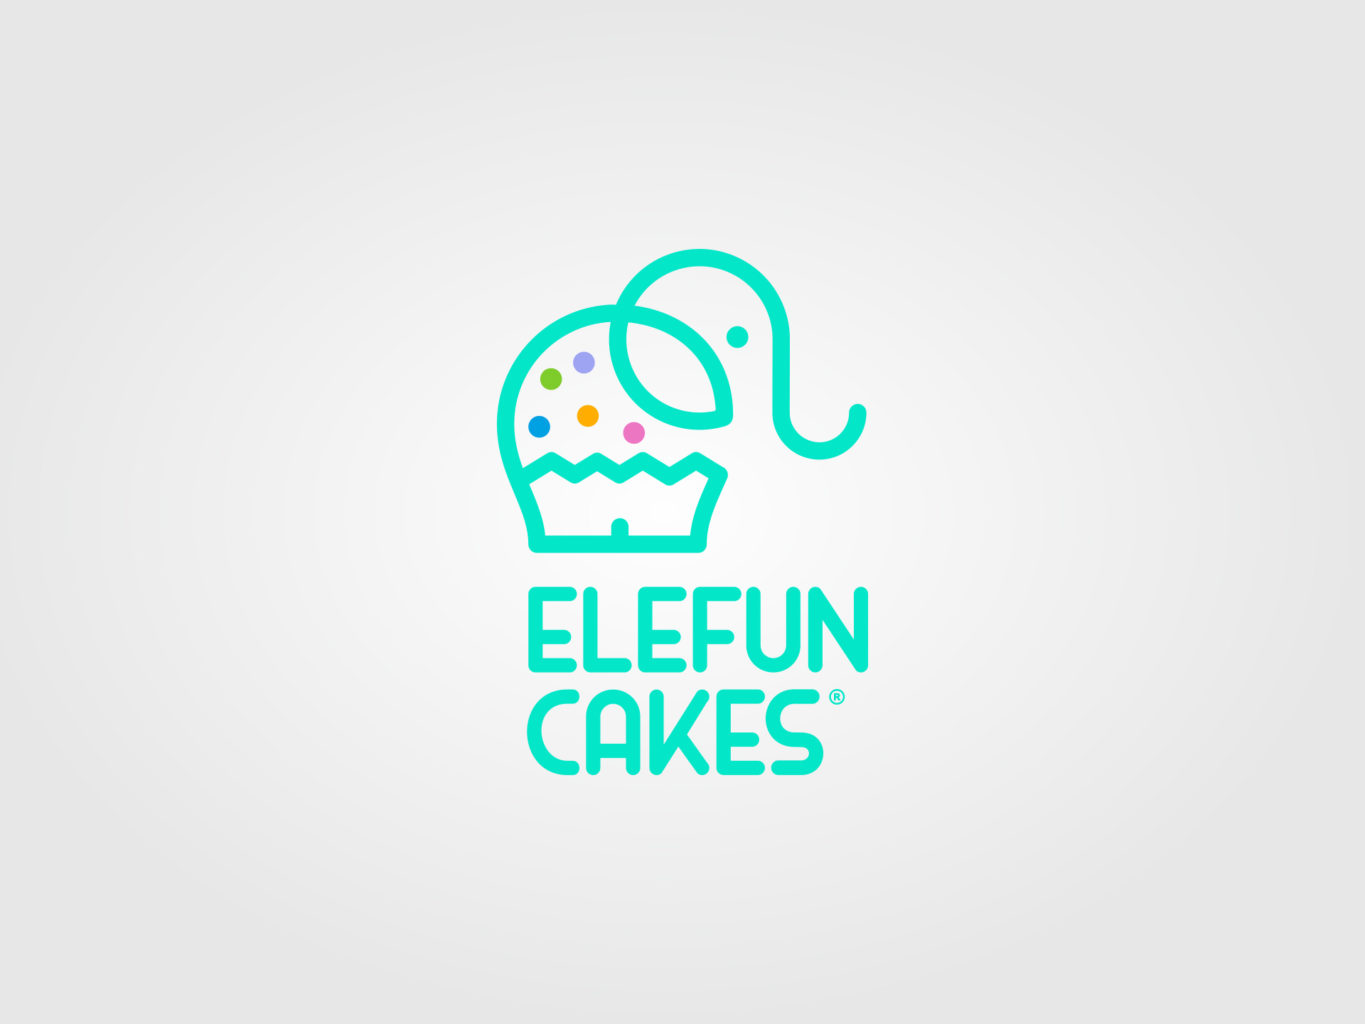 elefun cakes logo by fiftyeggz